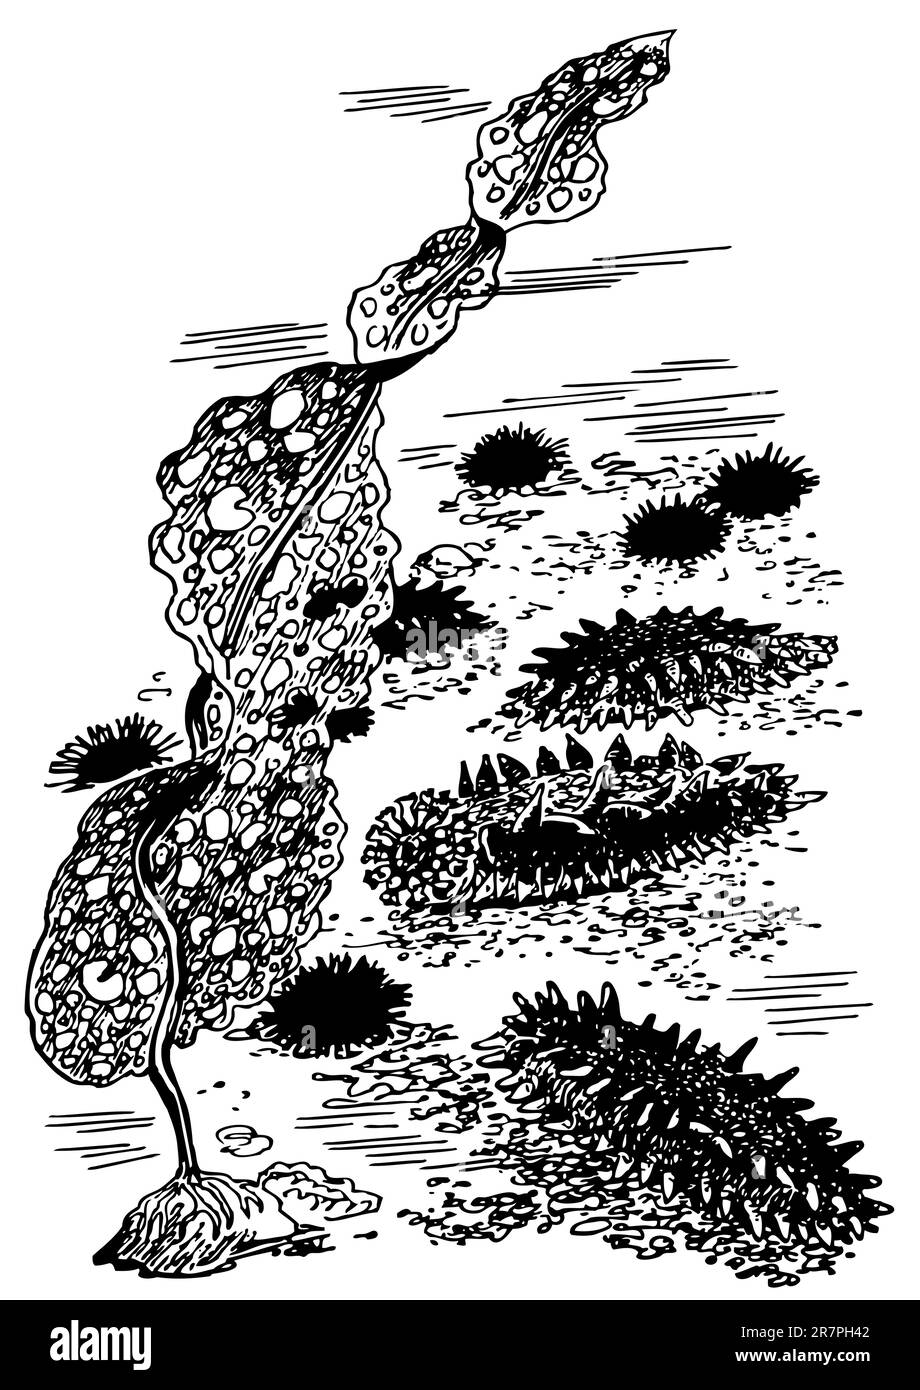 Beaucoup de concombres de mer Illustration de Vecteur